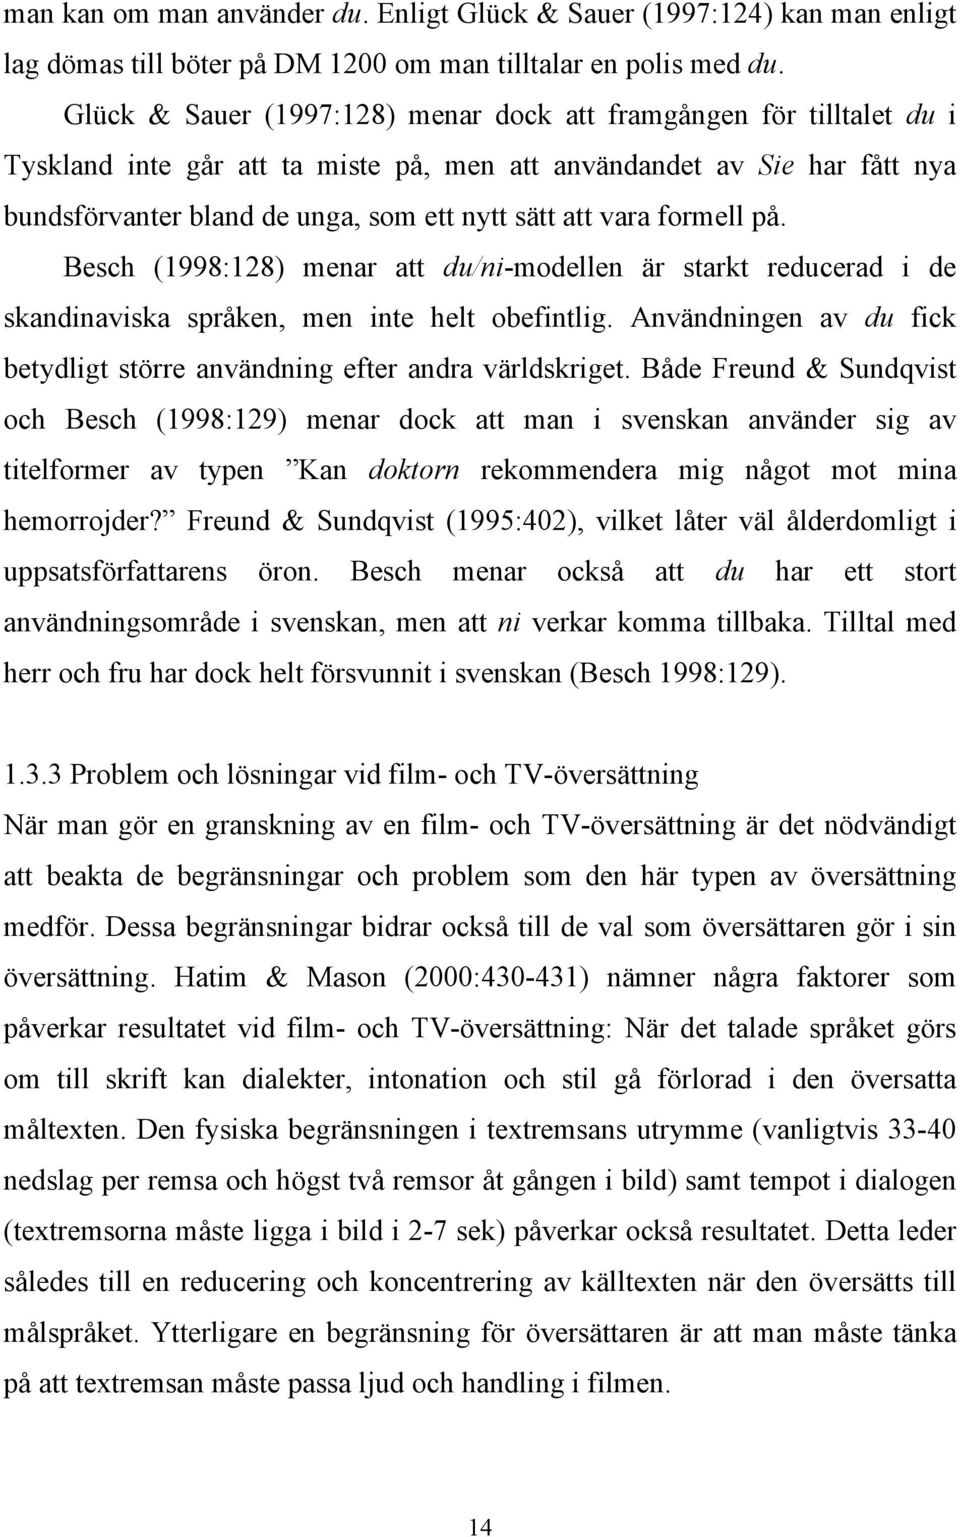 vara formell på. Besch (1998:128) menar att du/ni-modellen är starkt reducerad i de skandinaviska språken, men inte helt obefintlig.